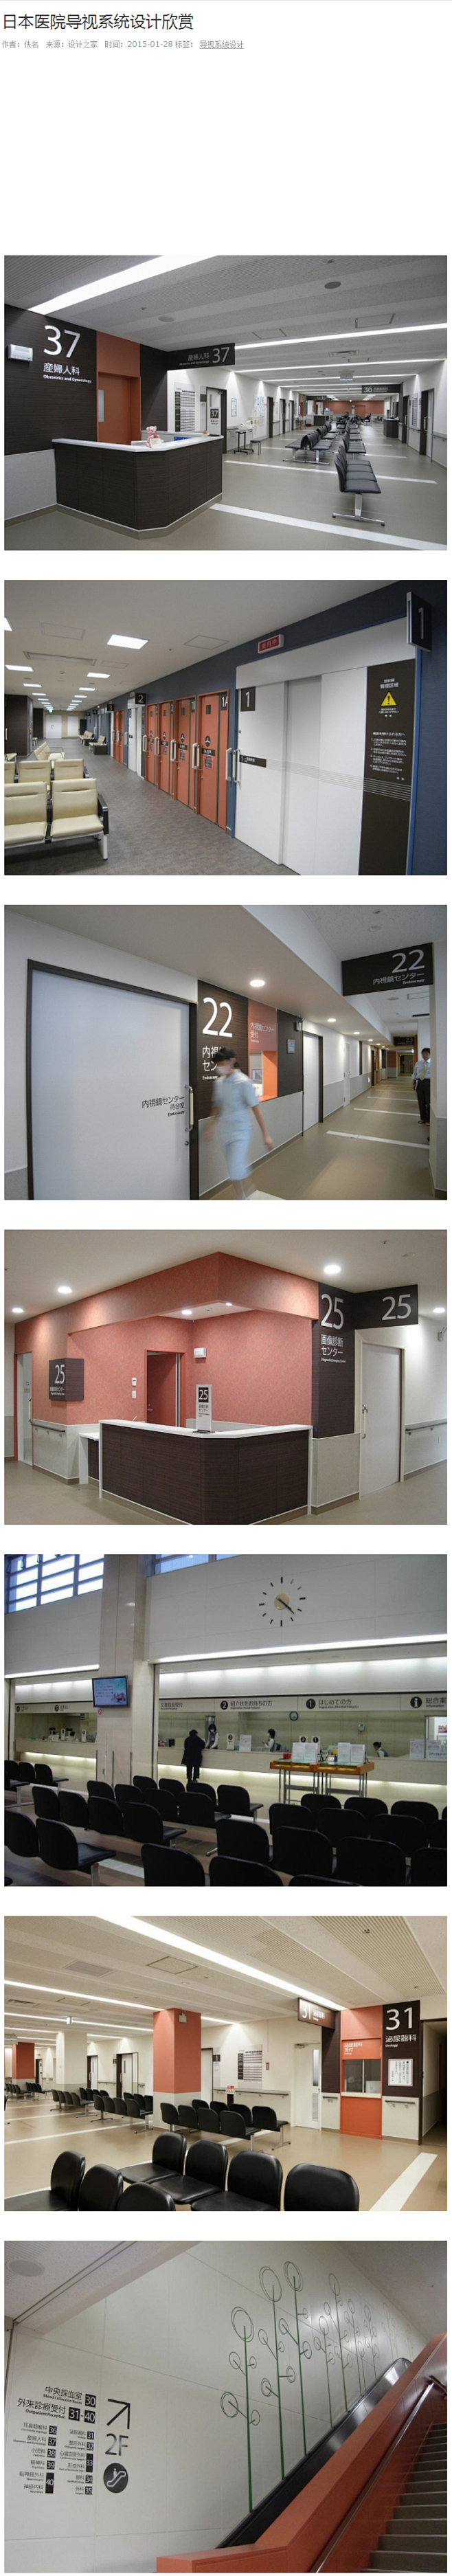 日本医院导视系统设计欣赏 - 设计之家